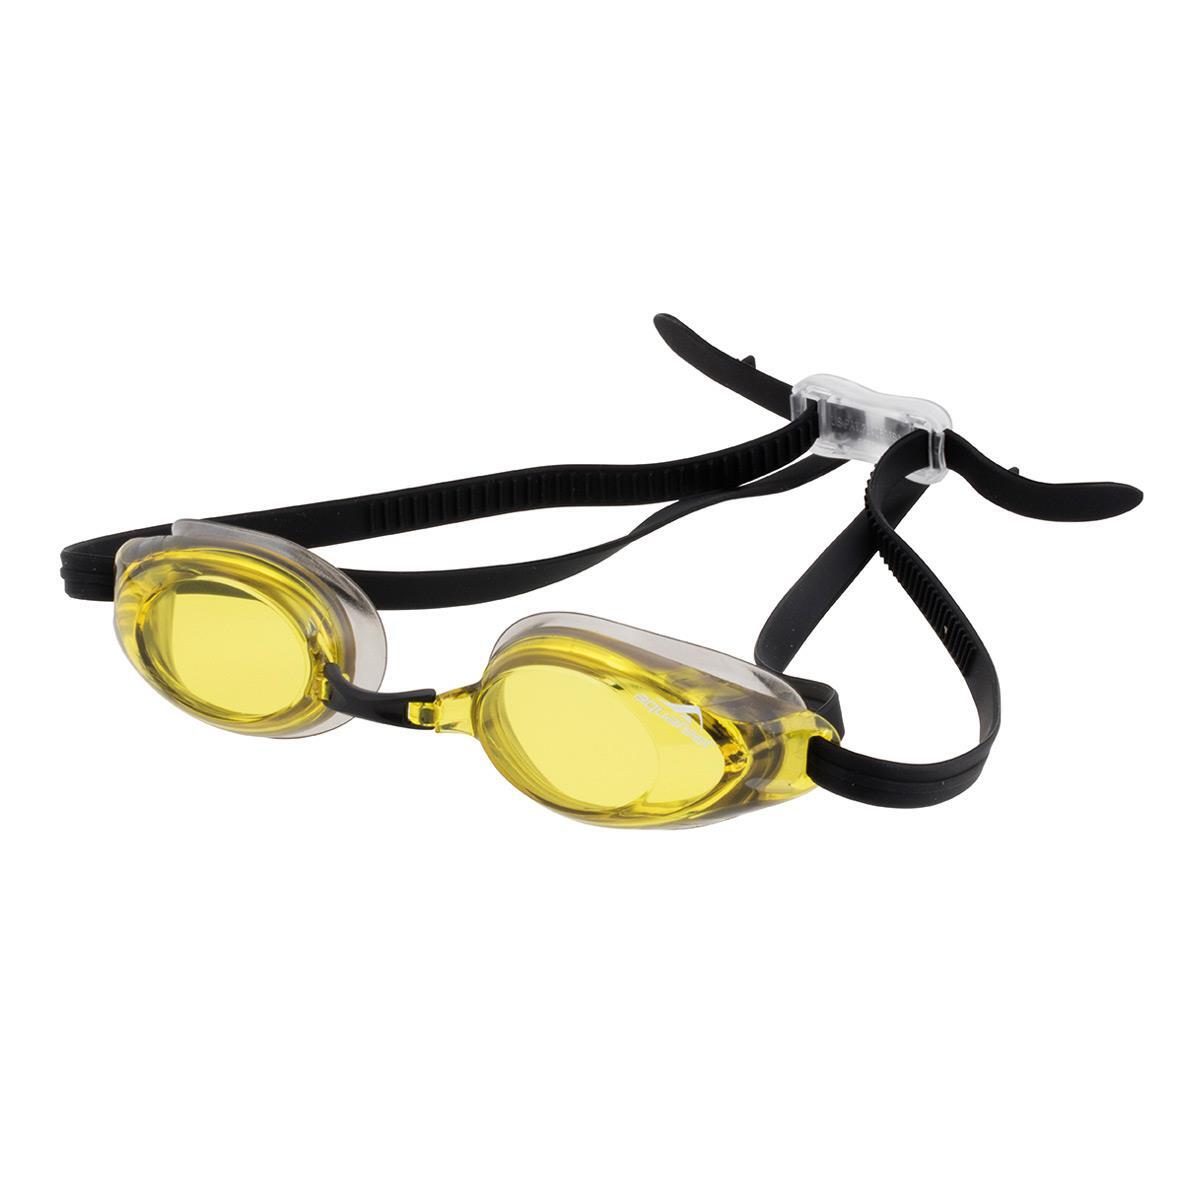 AQUAFEEL Aquafeel Glide Goggles - Yellow / Black